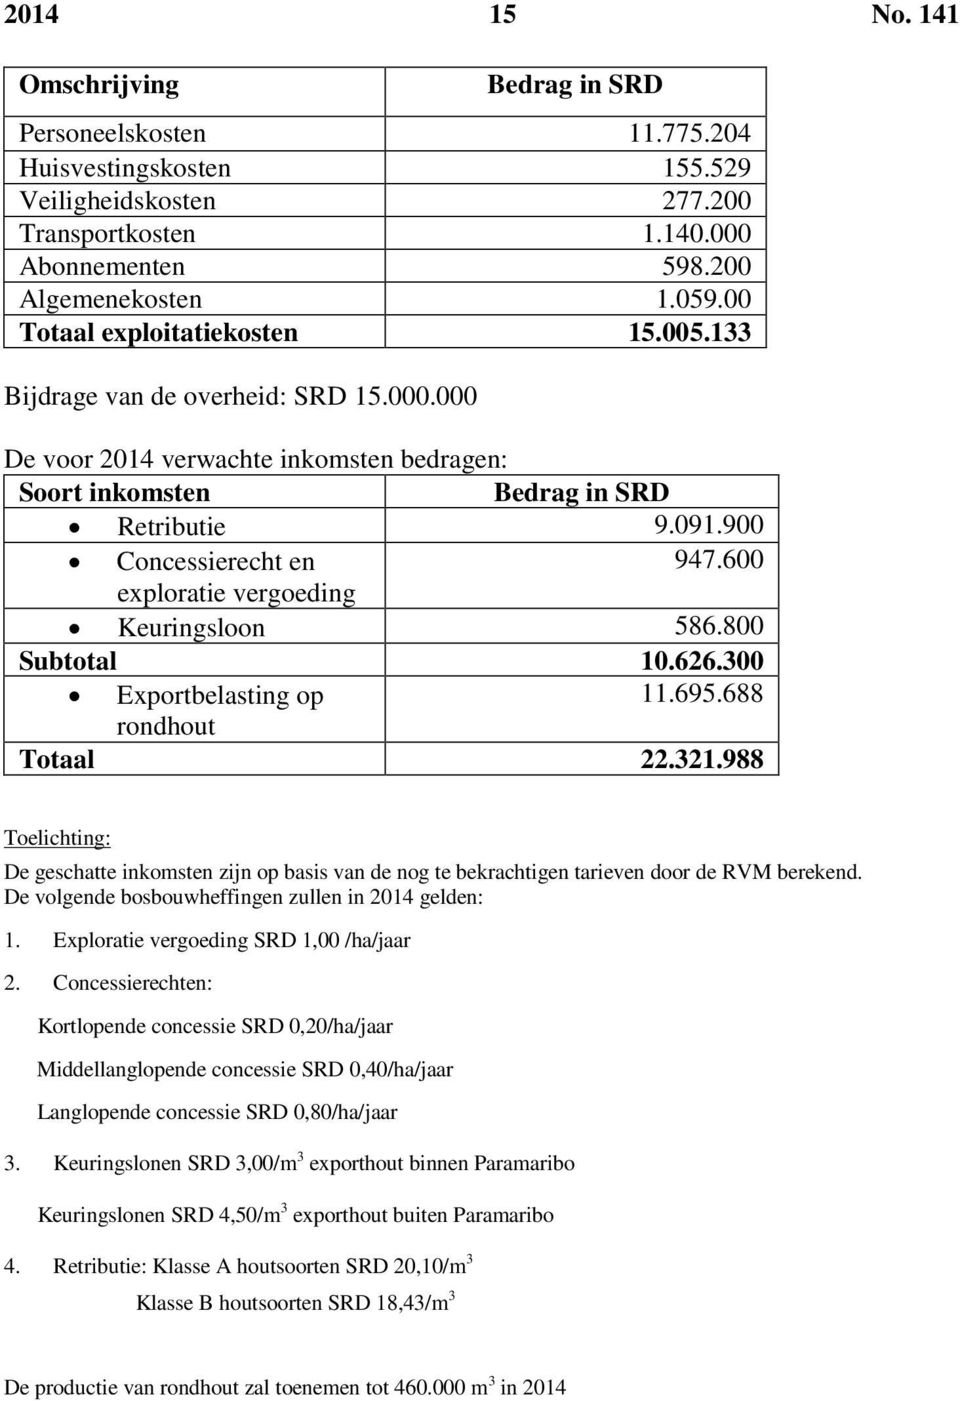 600 exploratie vergoeding Keuringsloon 586.800 Subtotal 10.626.300 Exportbelasting op 11.695.688 rondhout Totaal 22.321.